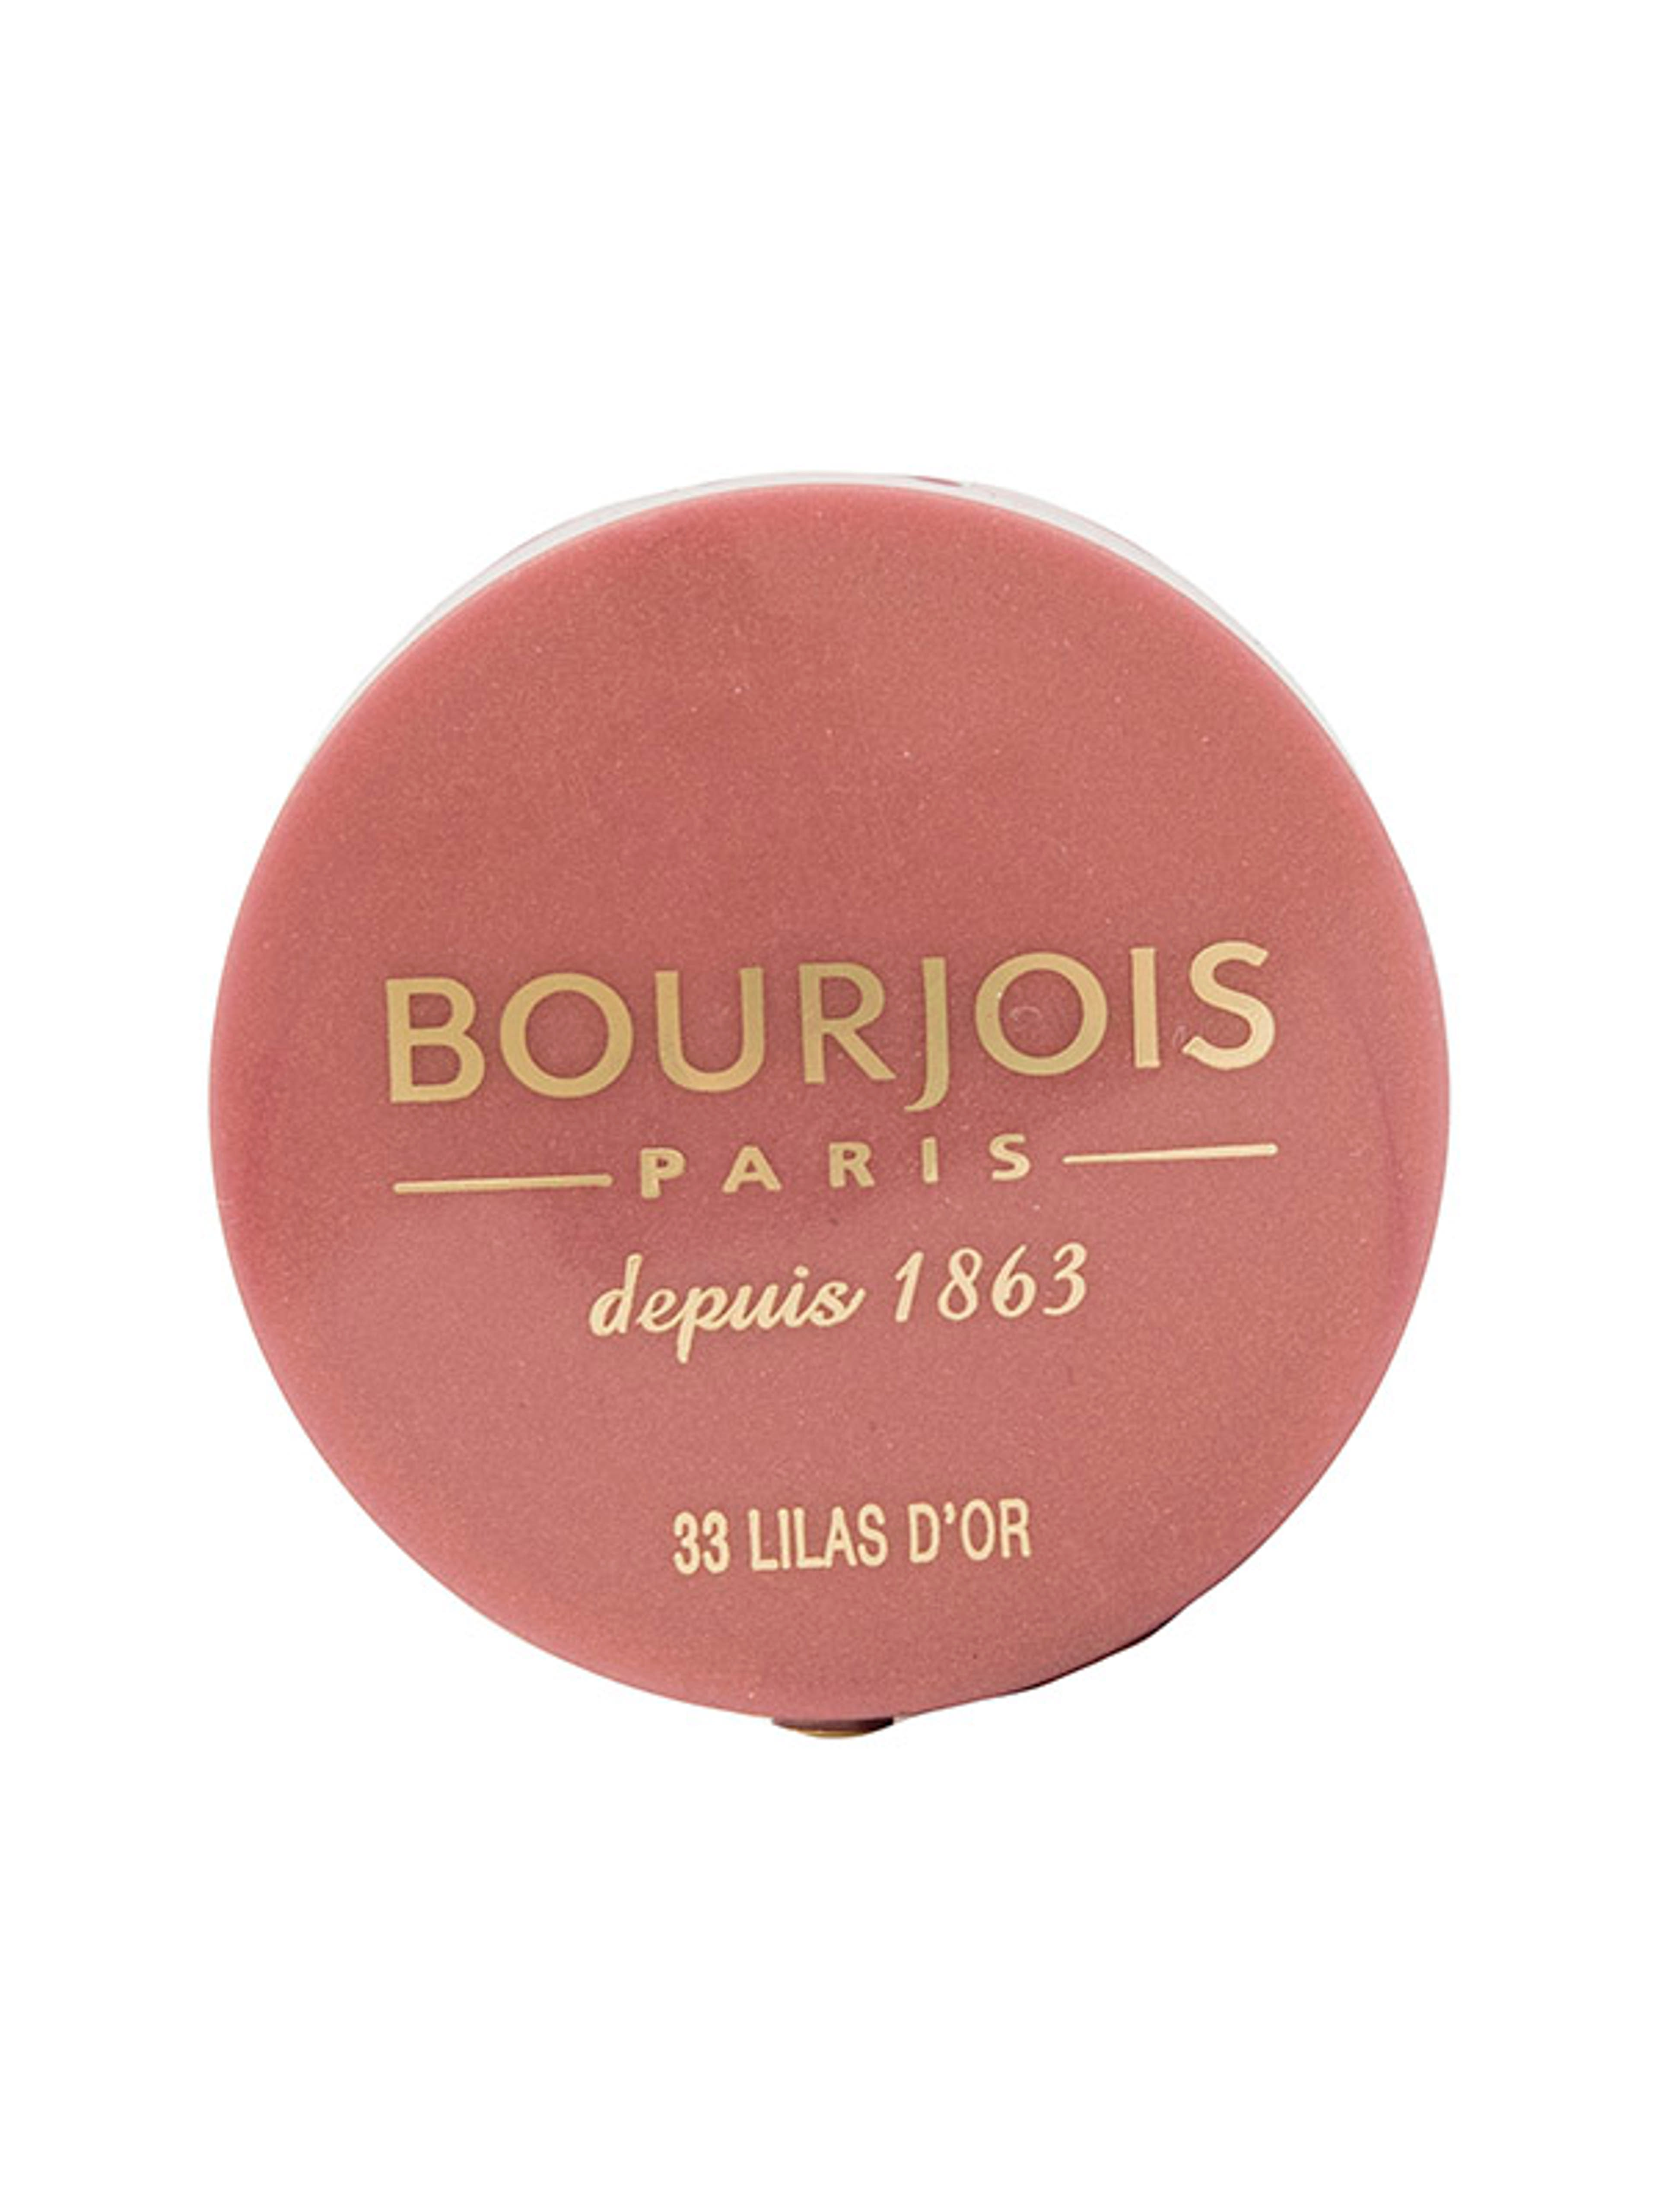 Bourjois Little Round Pot pirosító /33 - 1 db-1